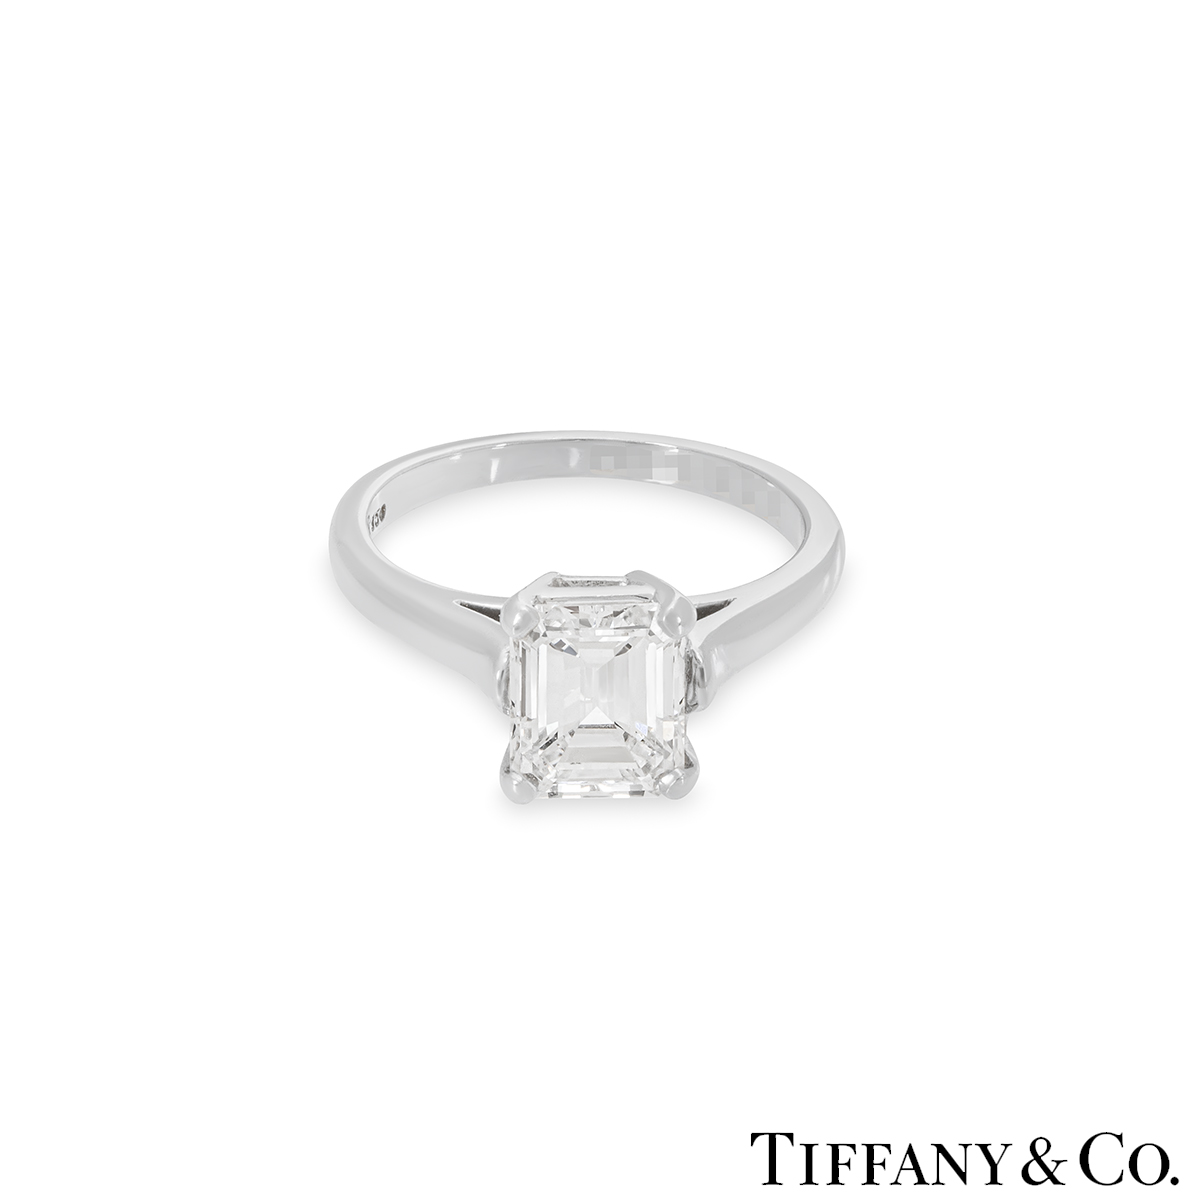 Tiffany & Co. Platinum Emerald Cut Diamond Ring 1.59ct E/VS1